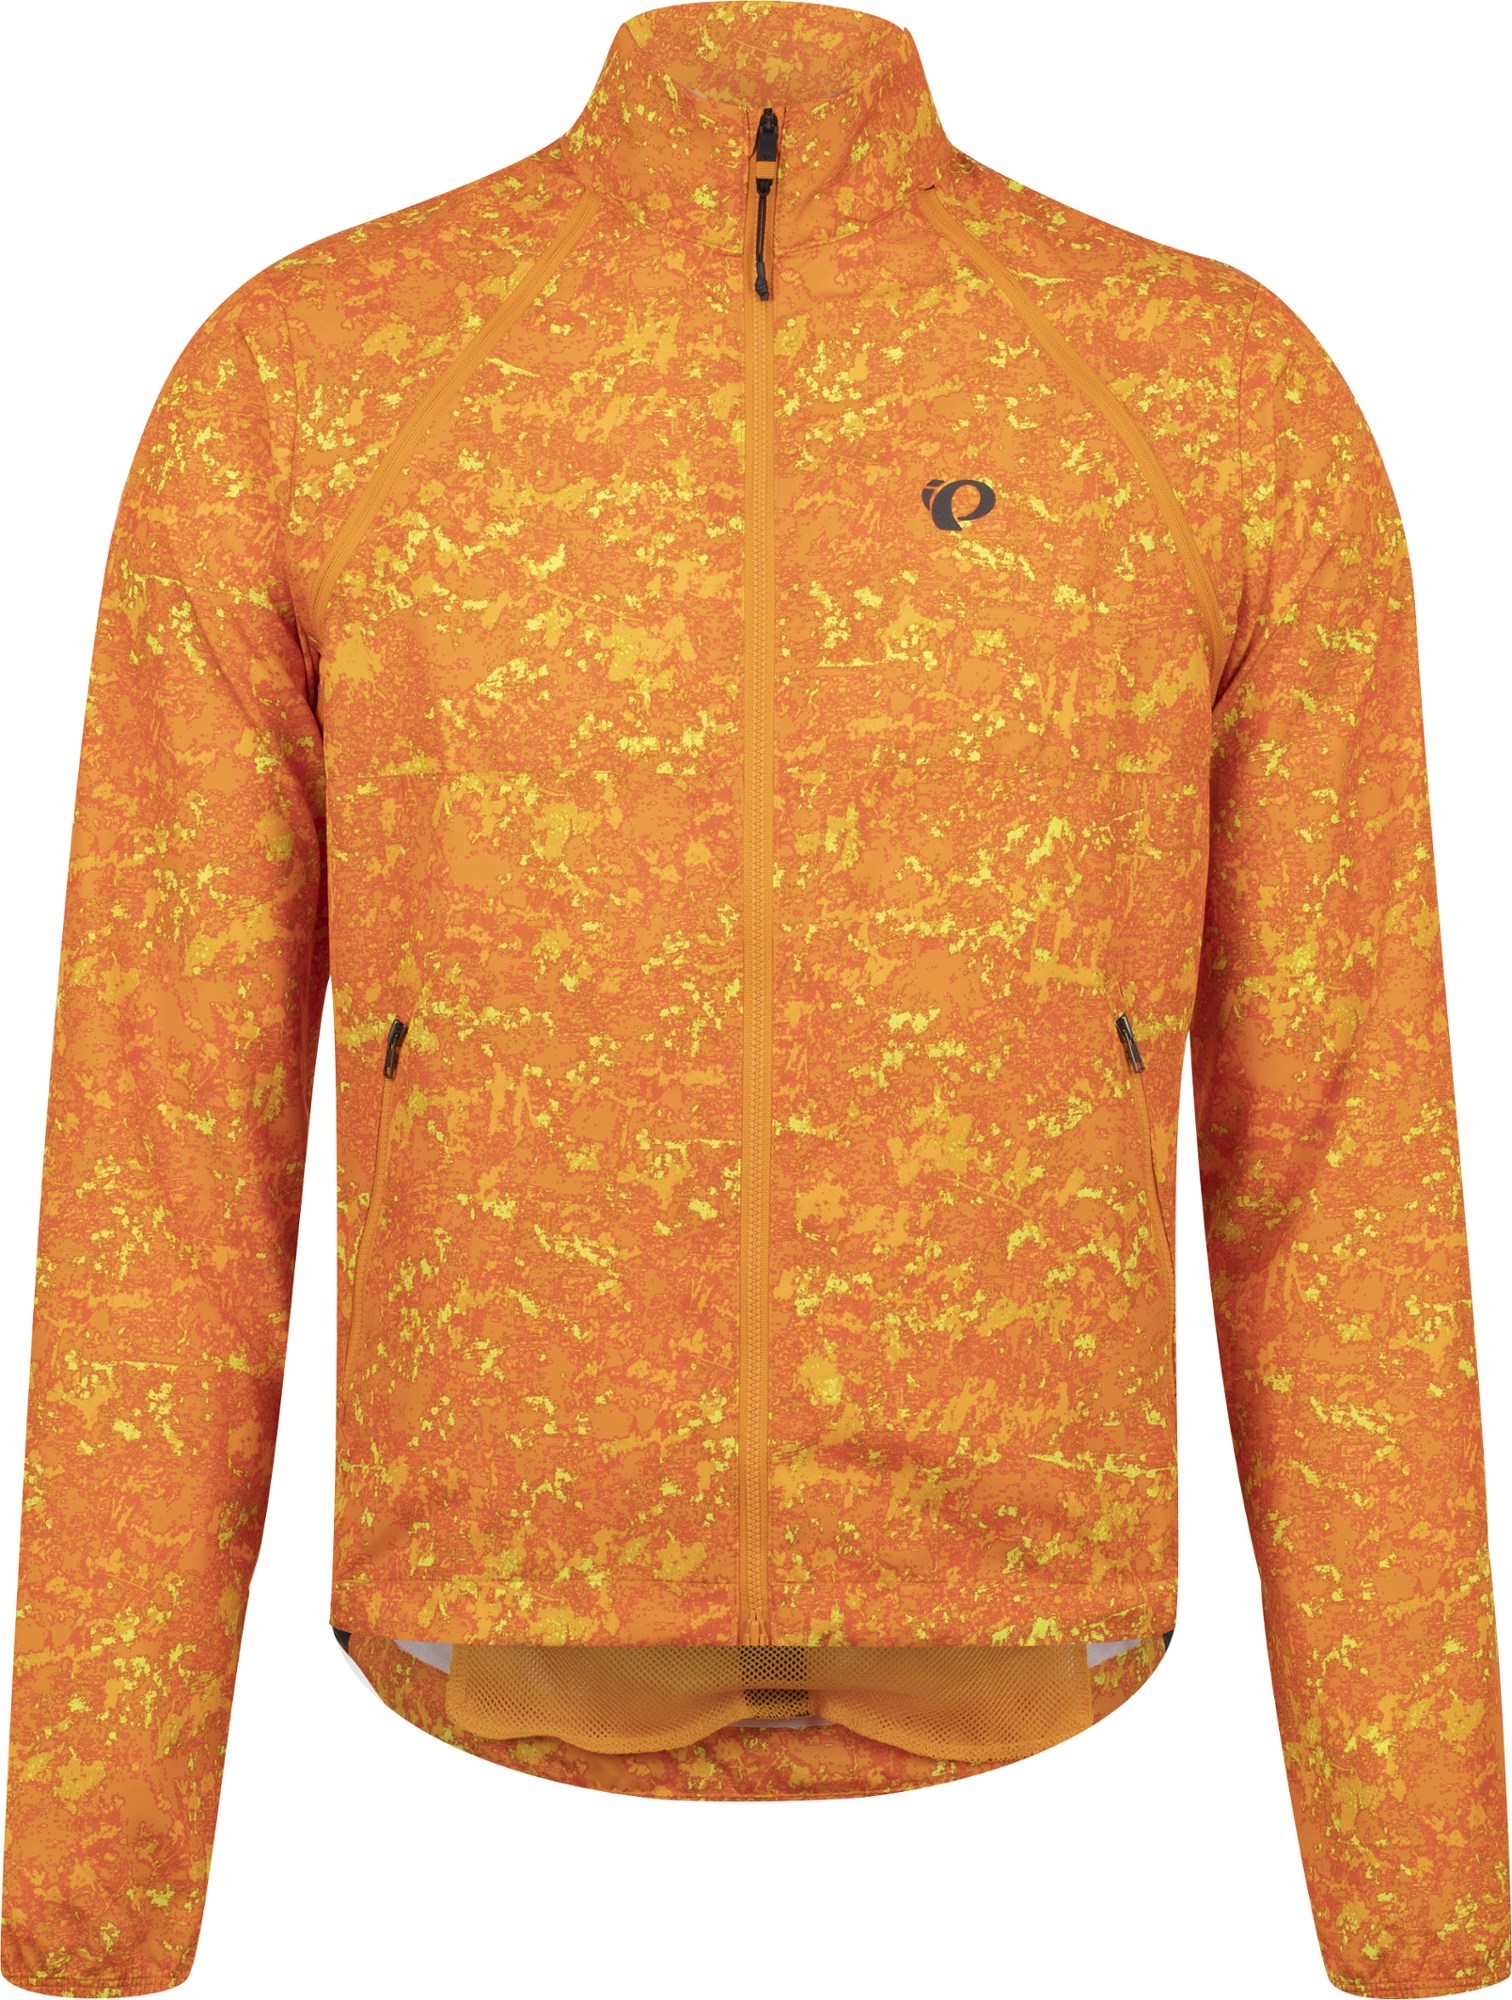 Велосипедная куртка-трансформер Quest Barrier, мужская PEARL iZUMi, оранжевый